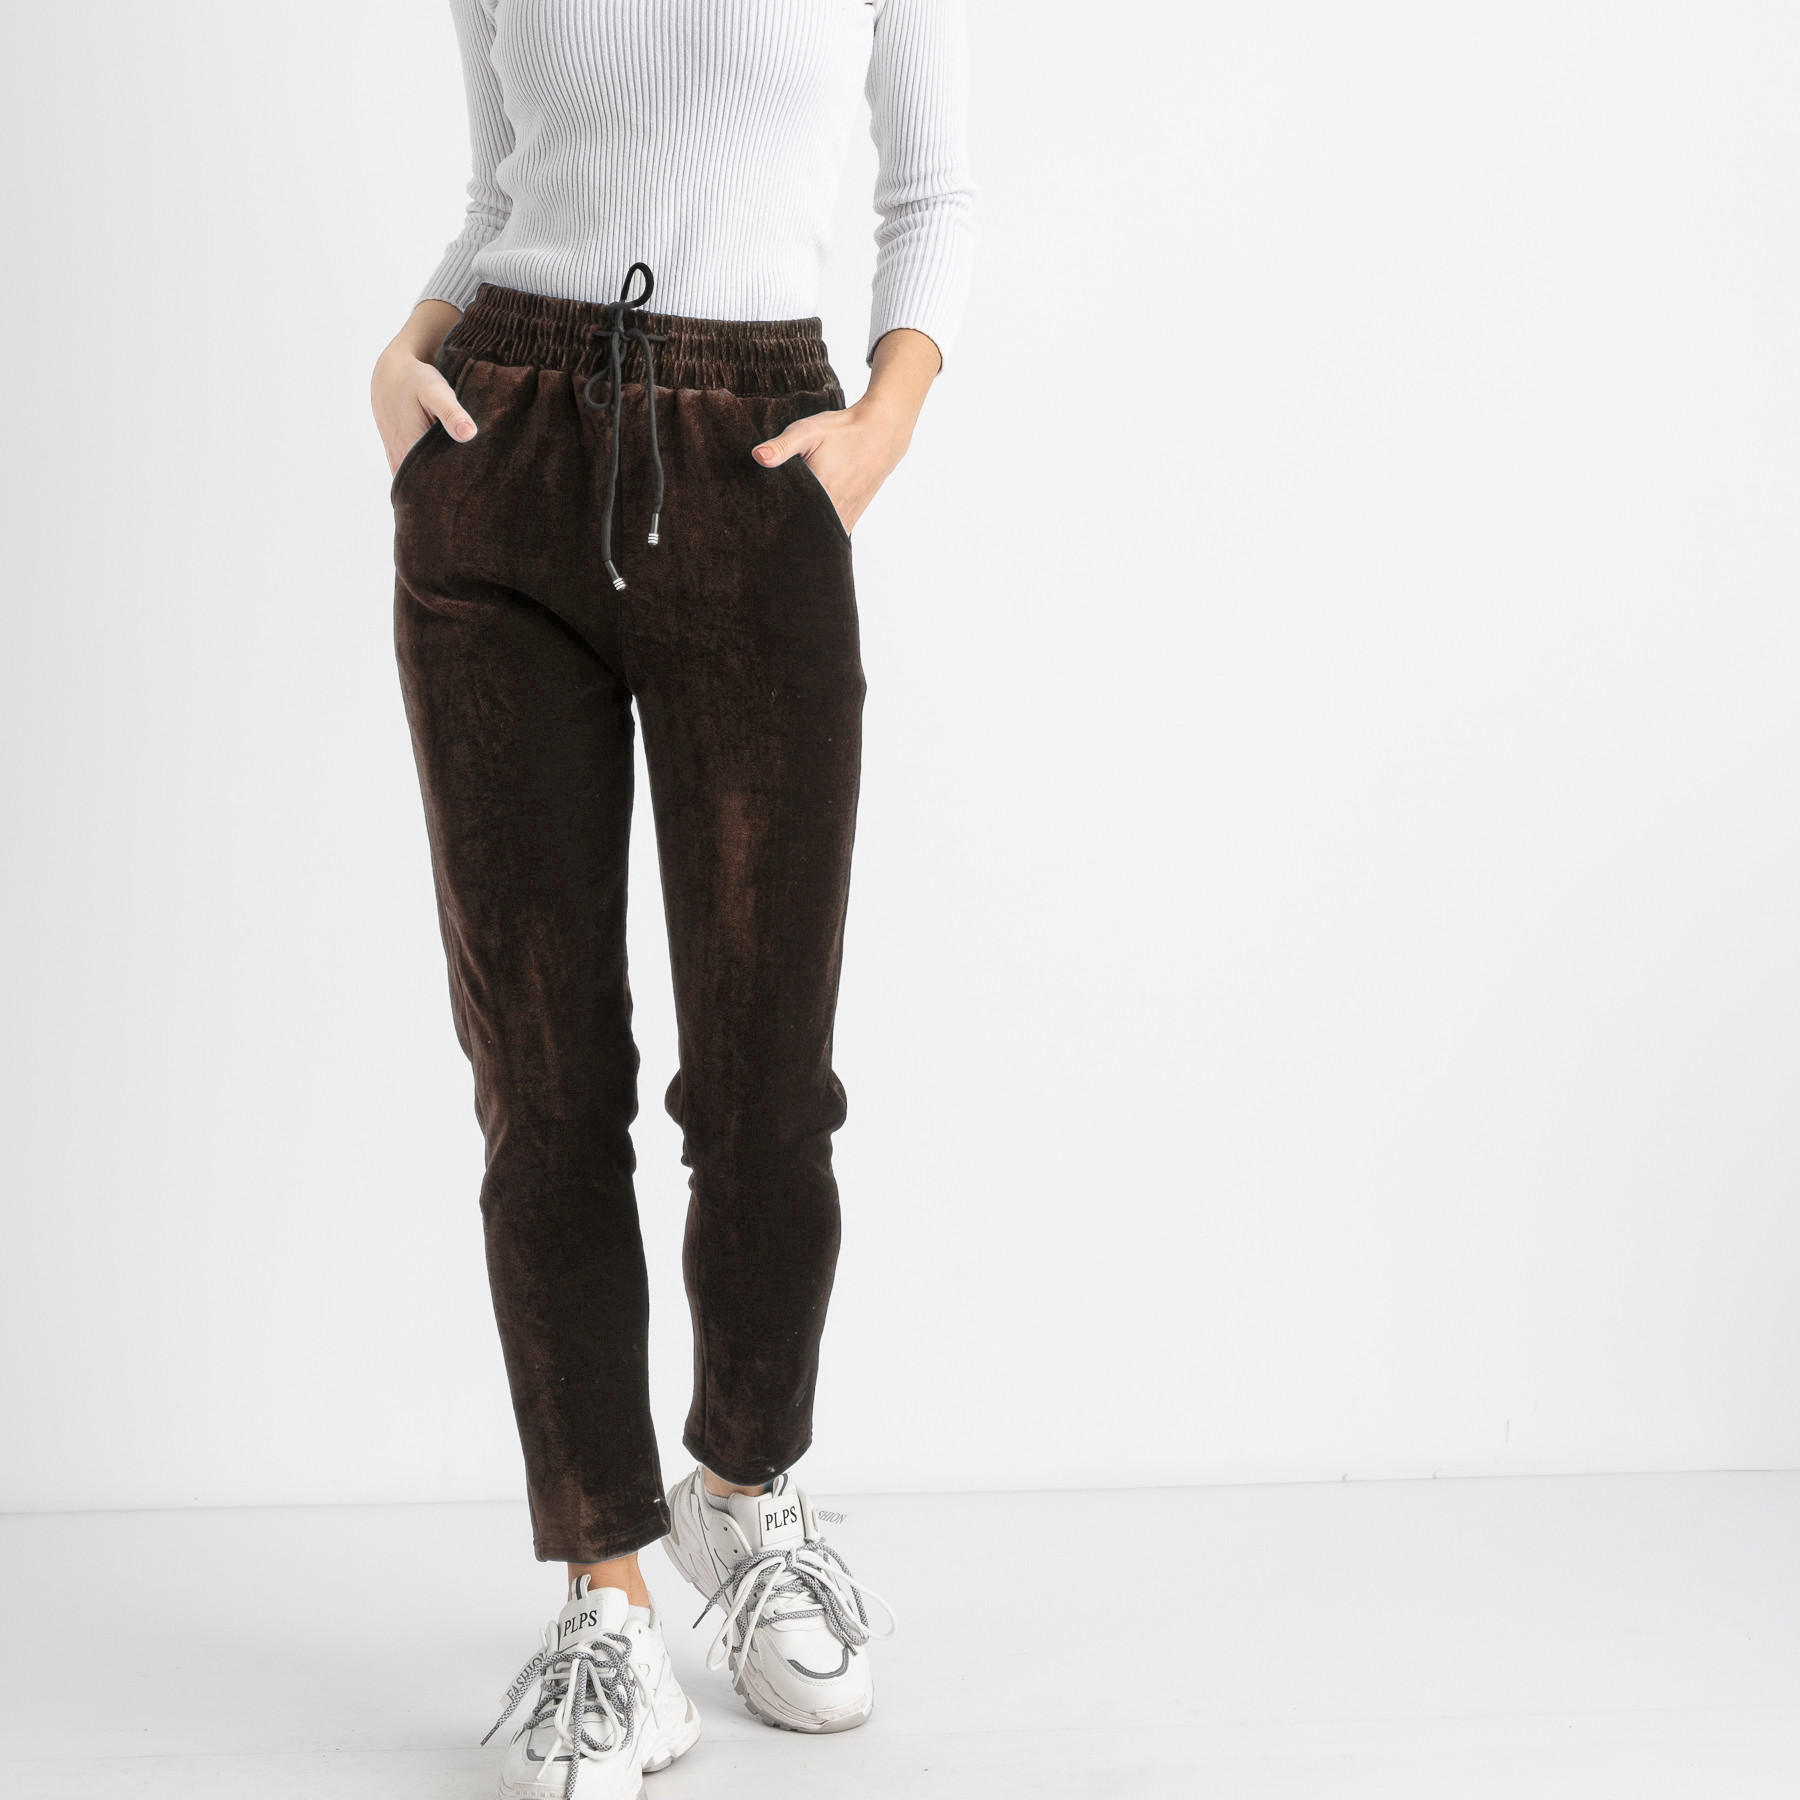 0235-63 коричневые спортивные брюки женские термо-велюр на меху (5 ед. размеры на бирке : 2XL.3XL.4XL.5XL.6XL)